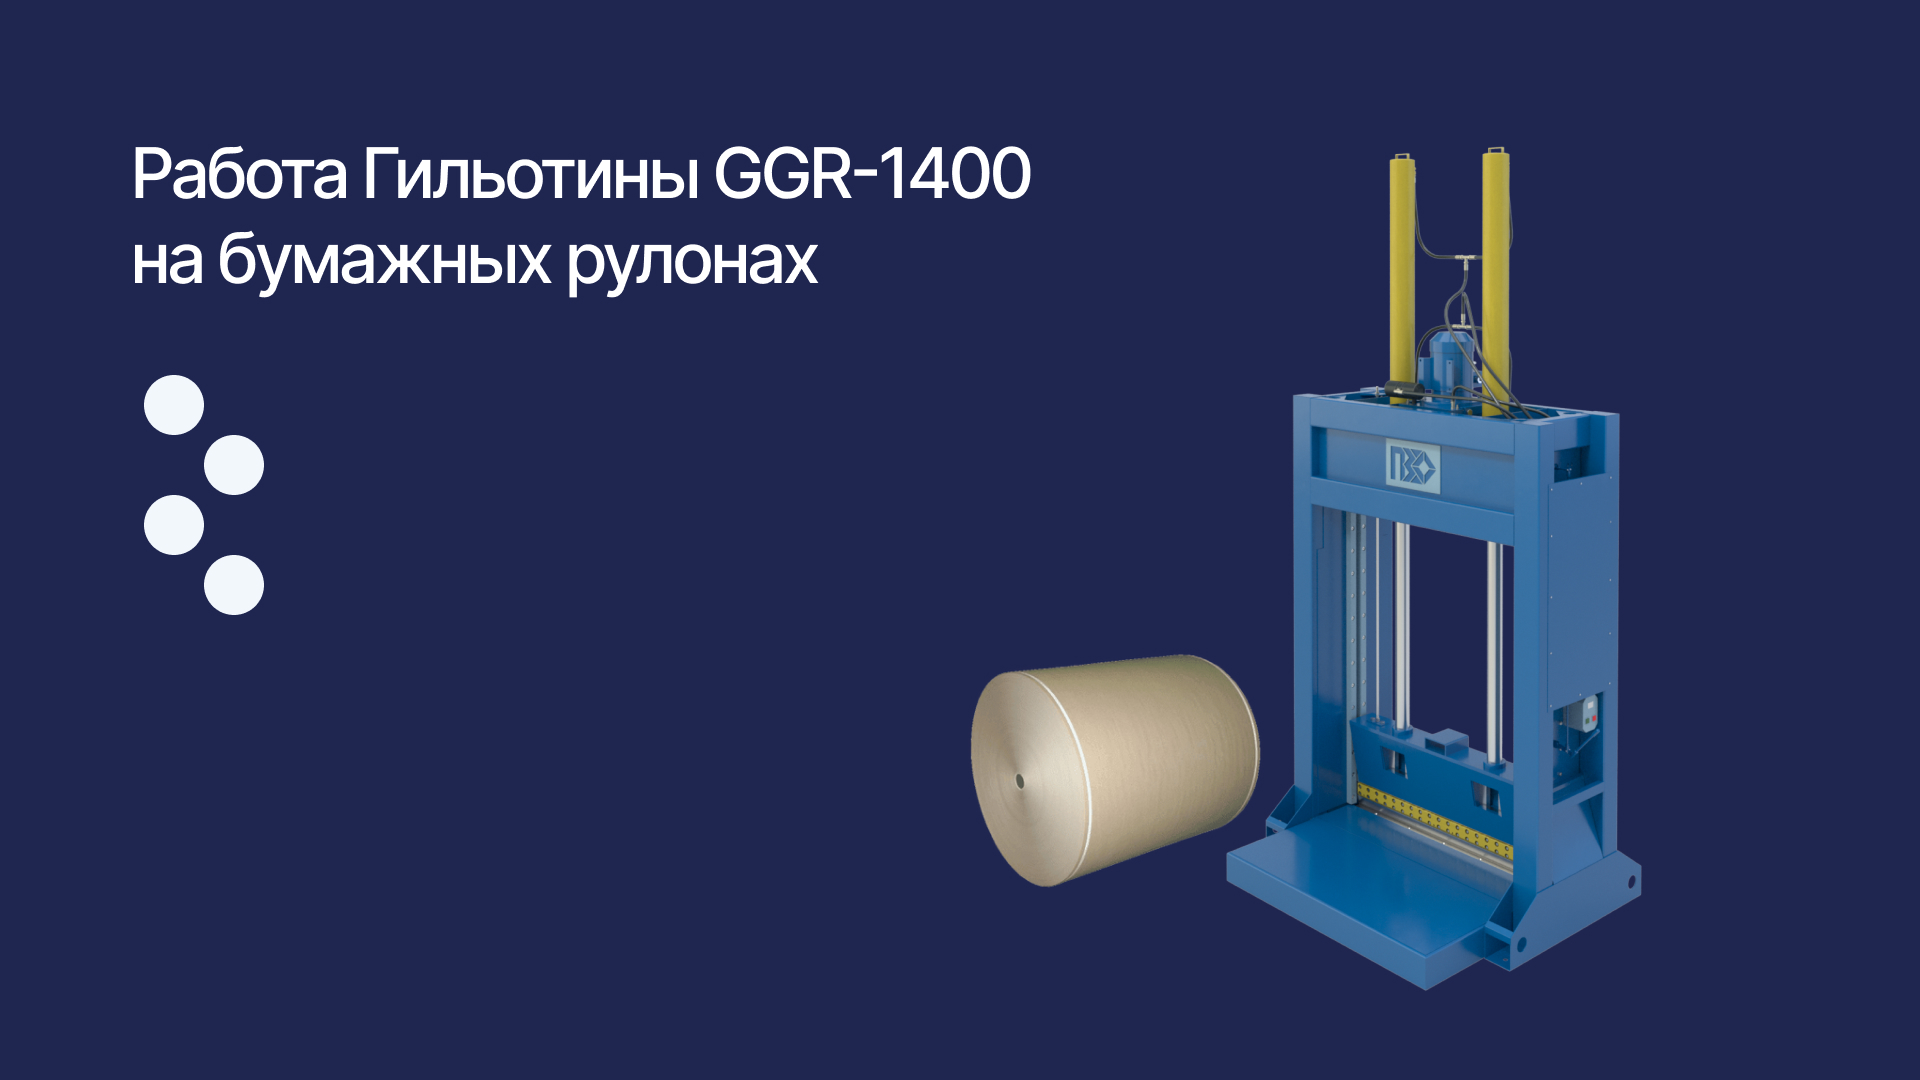 Гильотина ГГР-1400 режет бумажный рулон